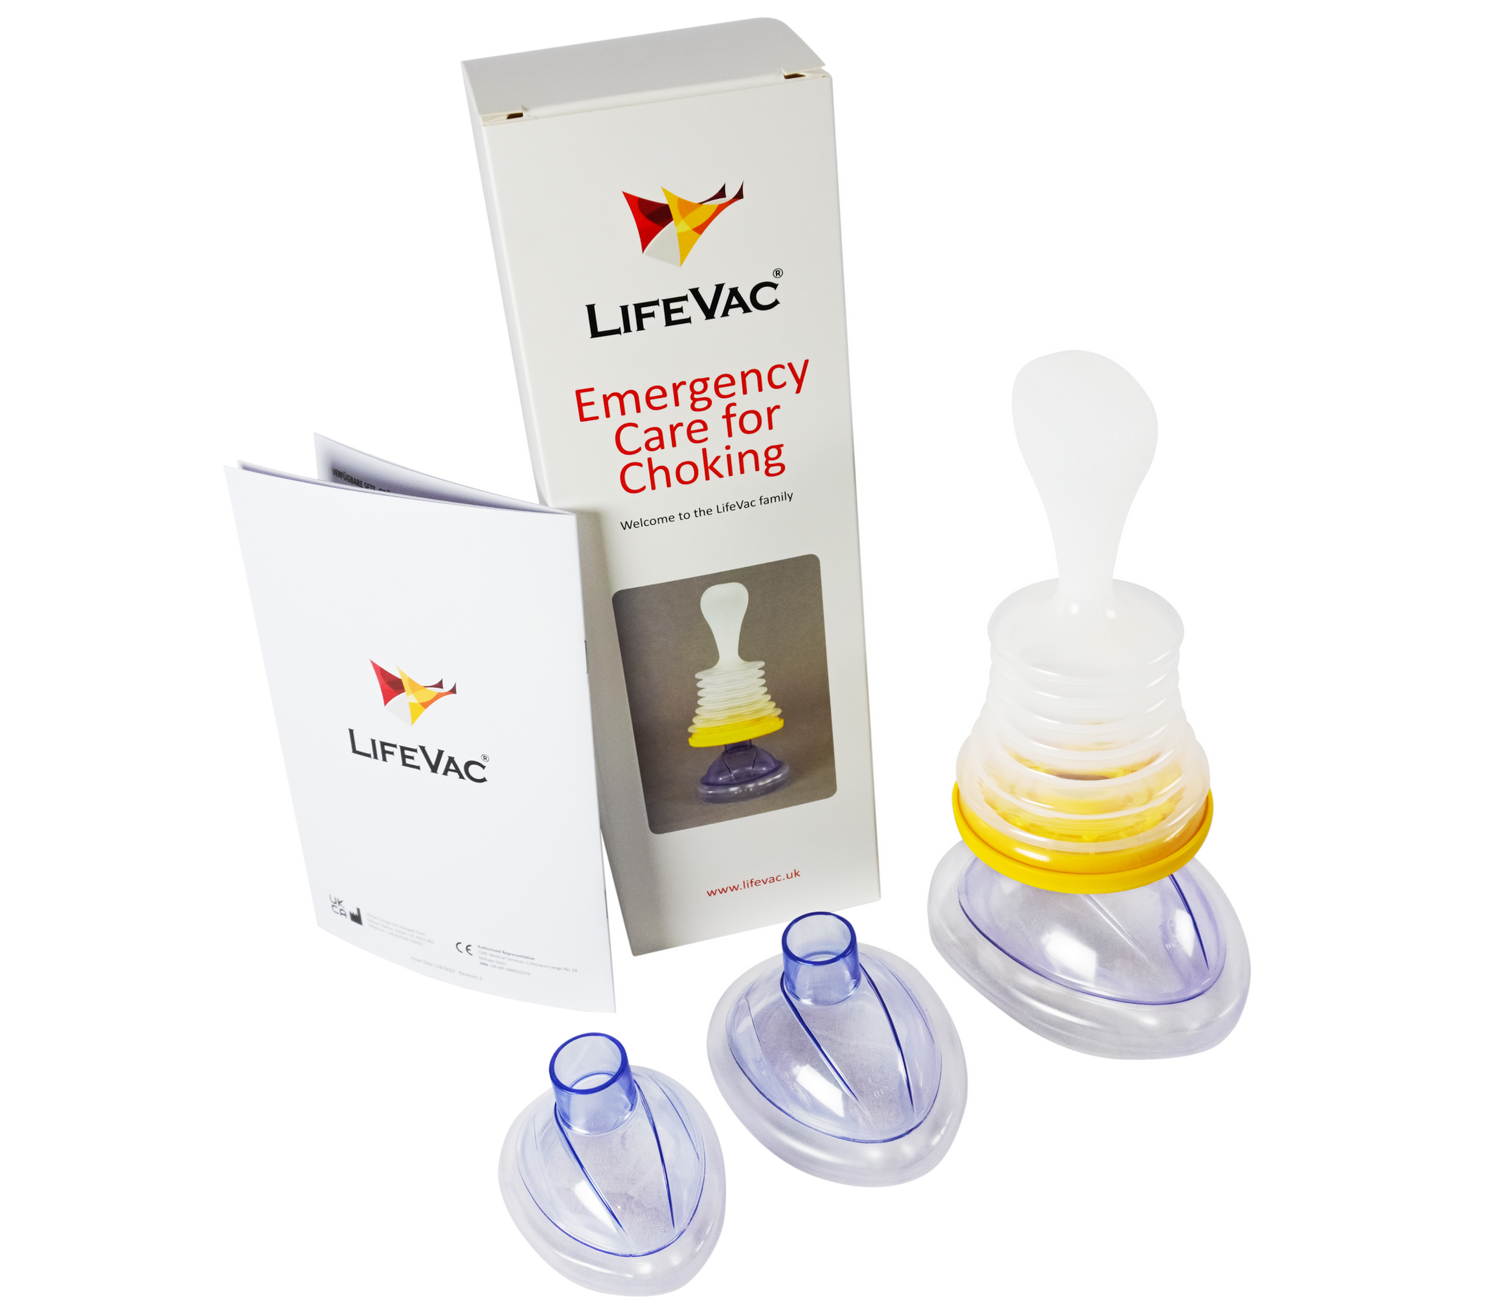 LifeVac to donate life-saving anti-choking device to every US school,  lifevac 